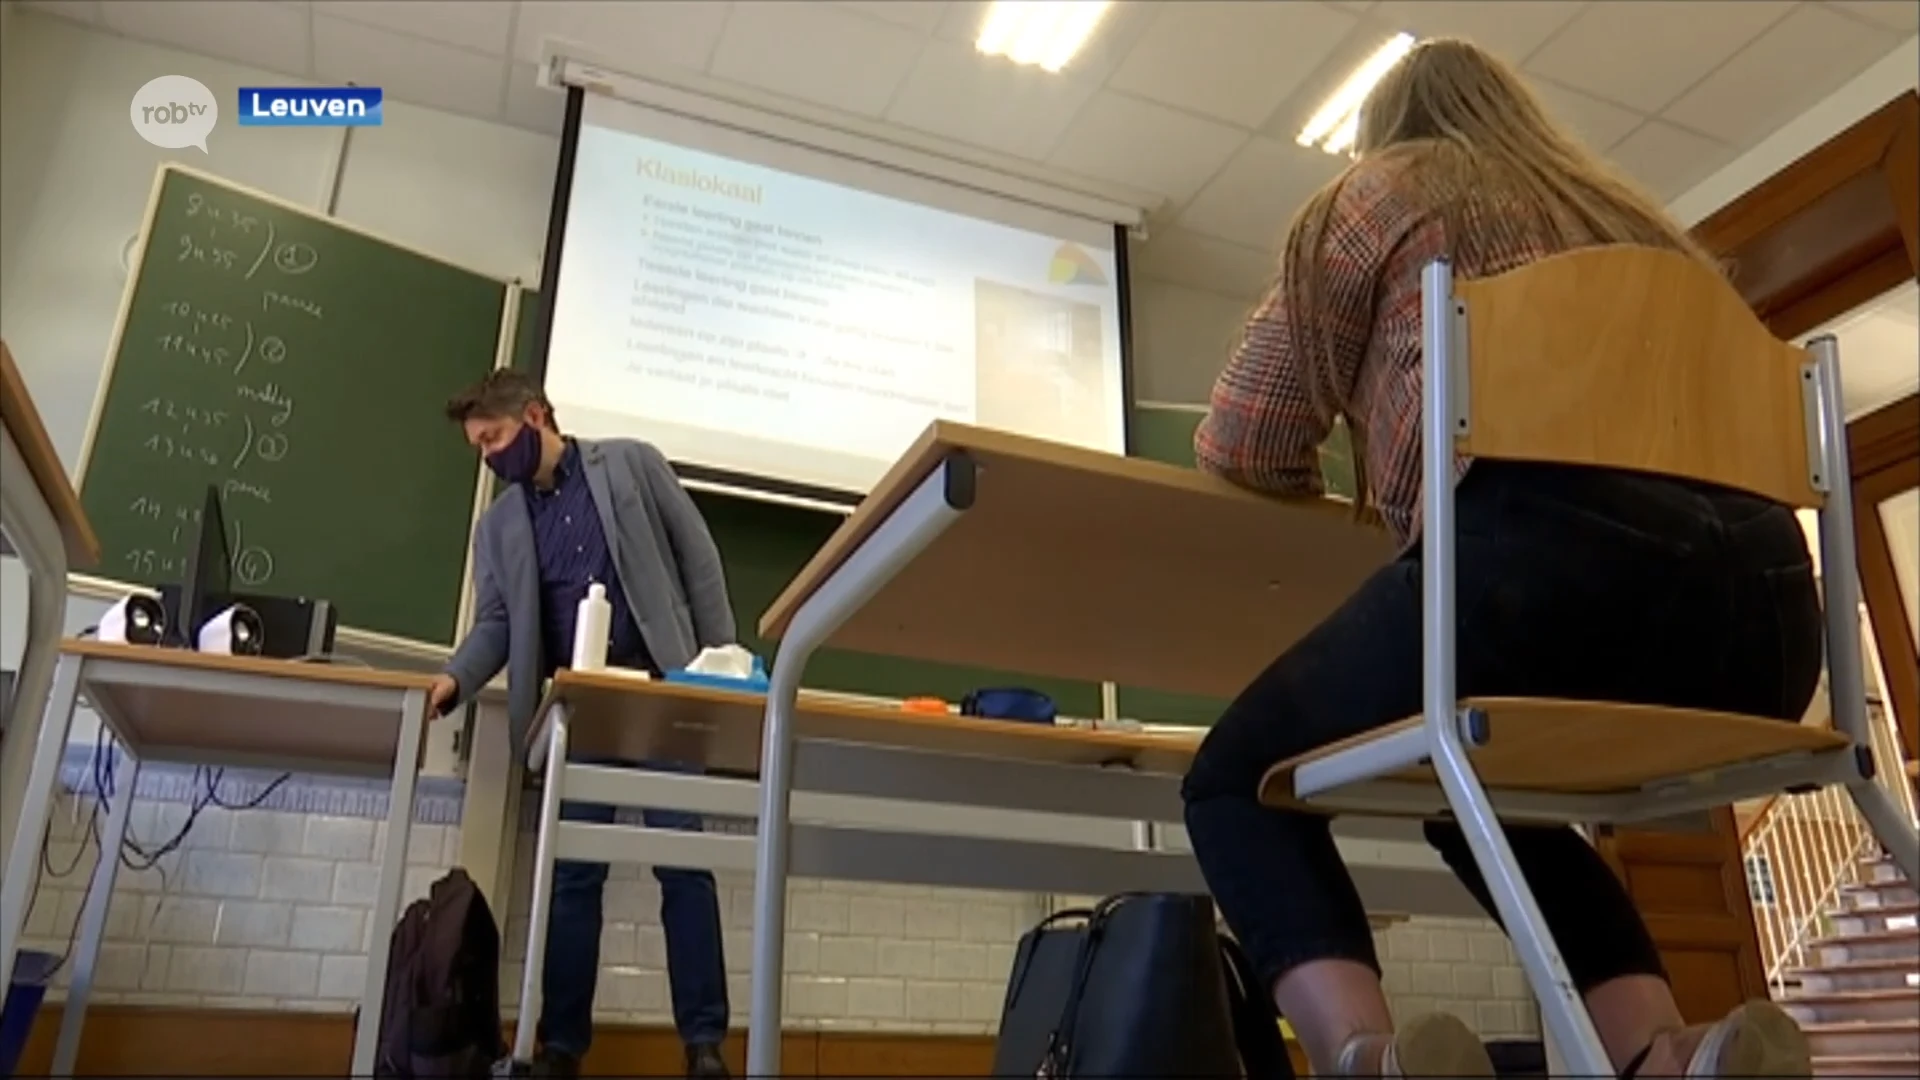 Leuvense middelbare scholen verlengen deeltijds afstandsonderwijs tot aan krokusvakantie